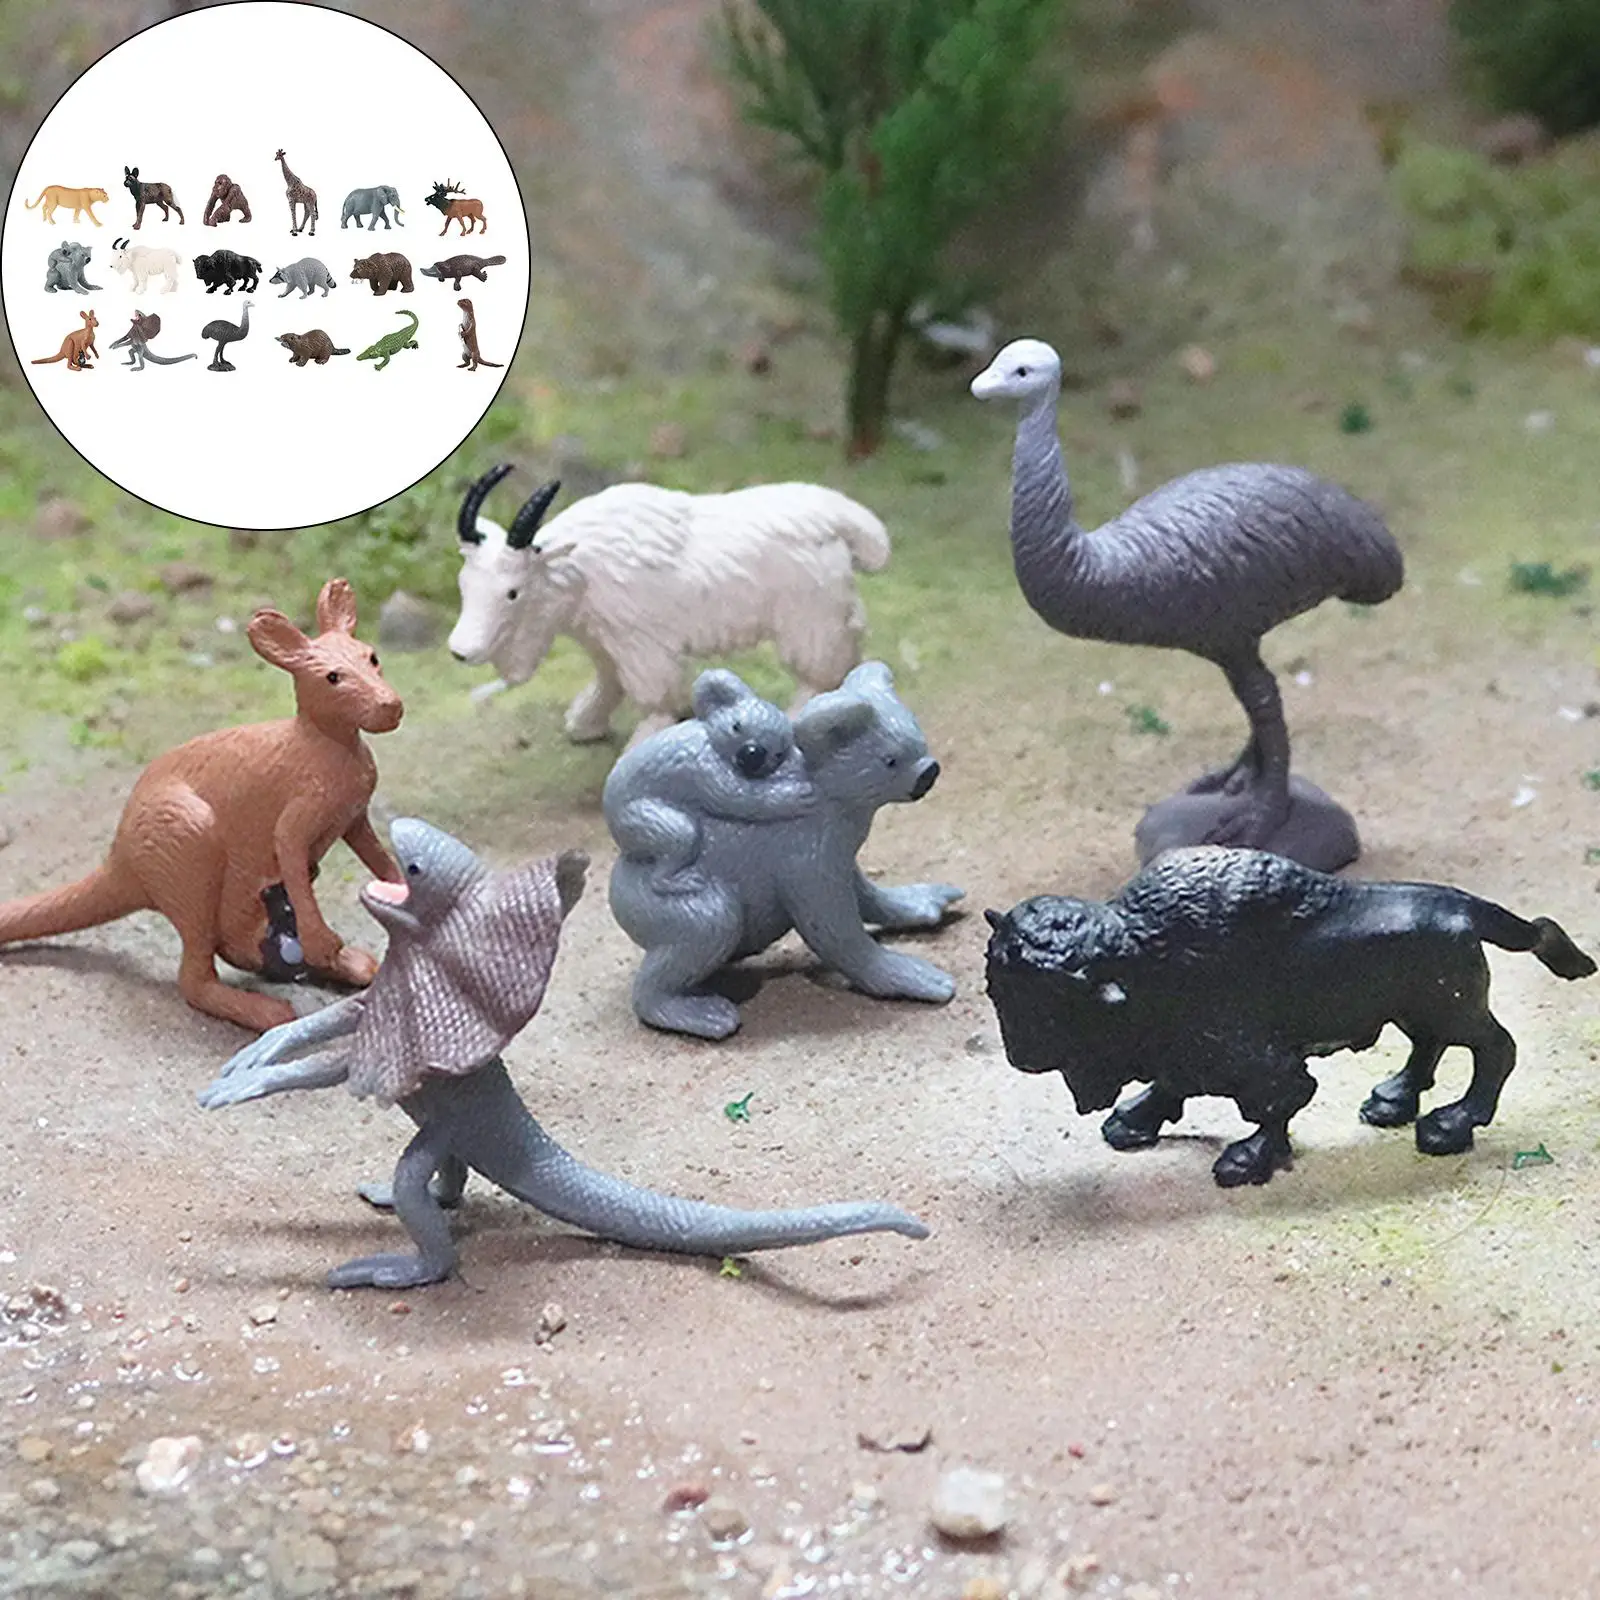 

Реалистичные игрушки в виде диких животных, 18x, фигурки животных, зоопарк мира, фигурки, украшения